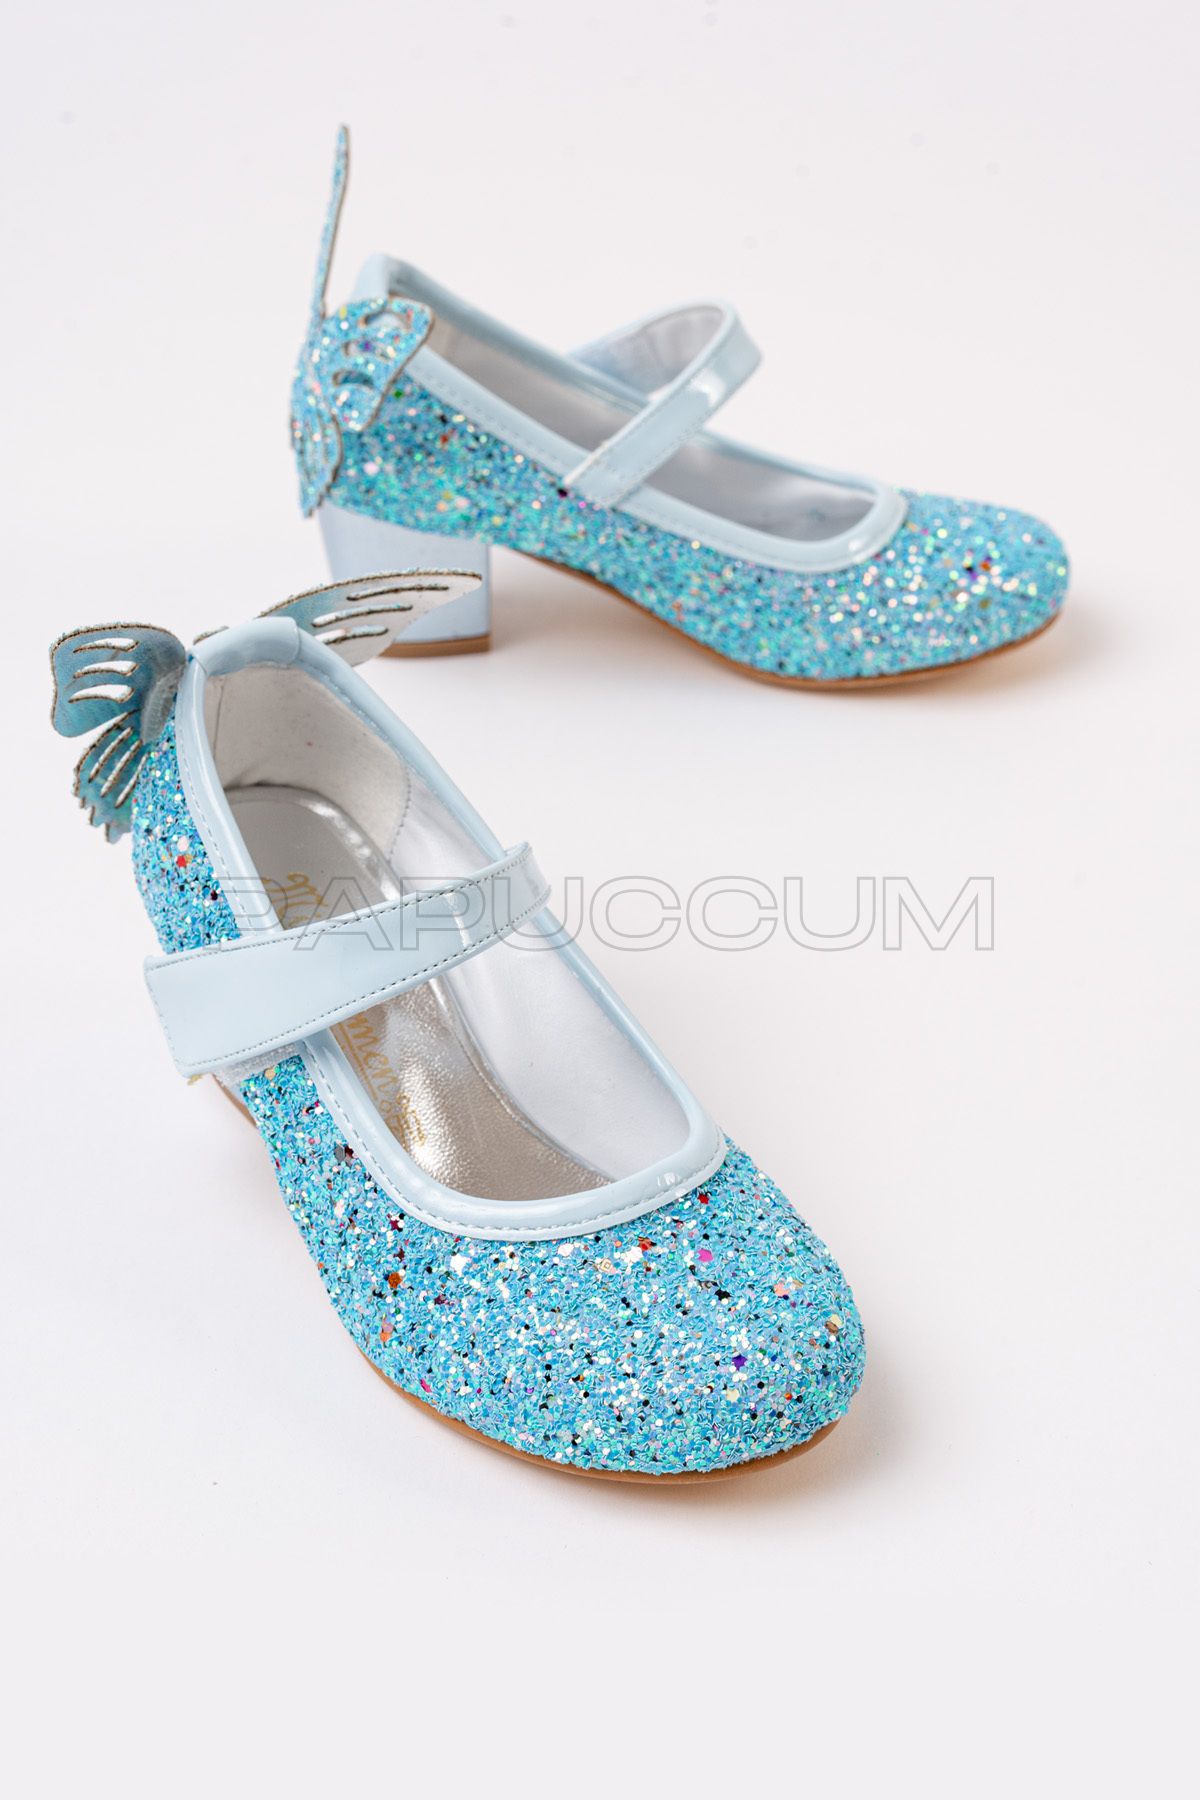 p papuccum ortopedi çocuk ayakkabıları Kız Çocuk Mavi Kelebekli Topuklu Abiye Ayakkabı